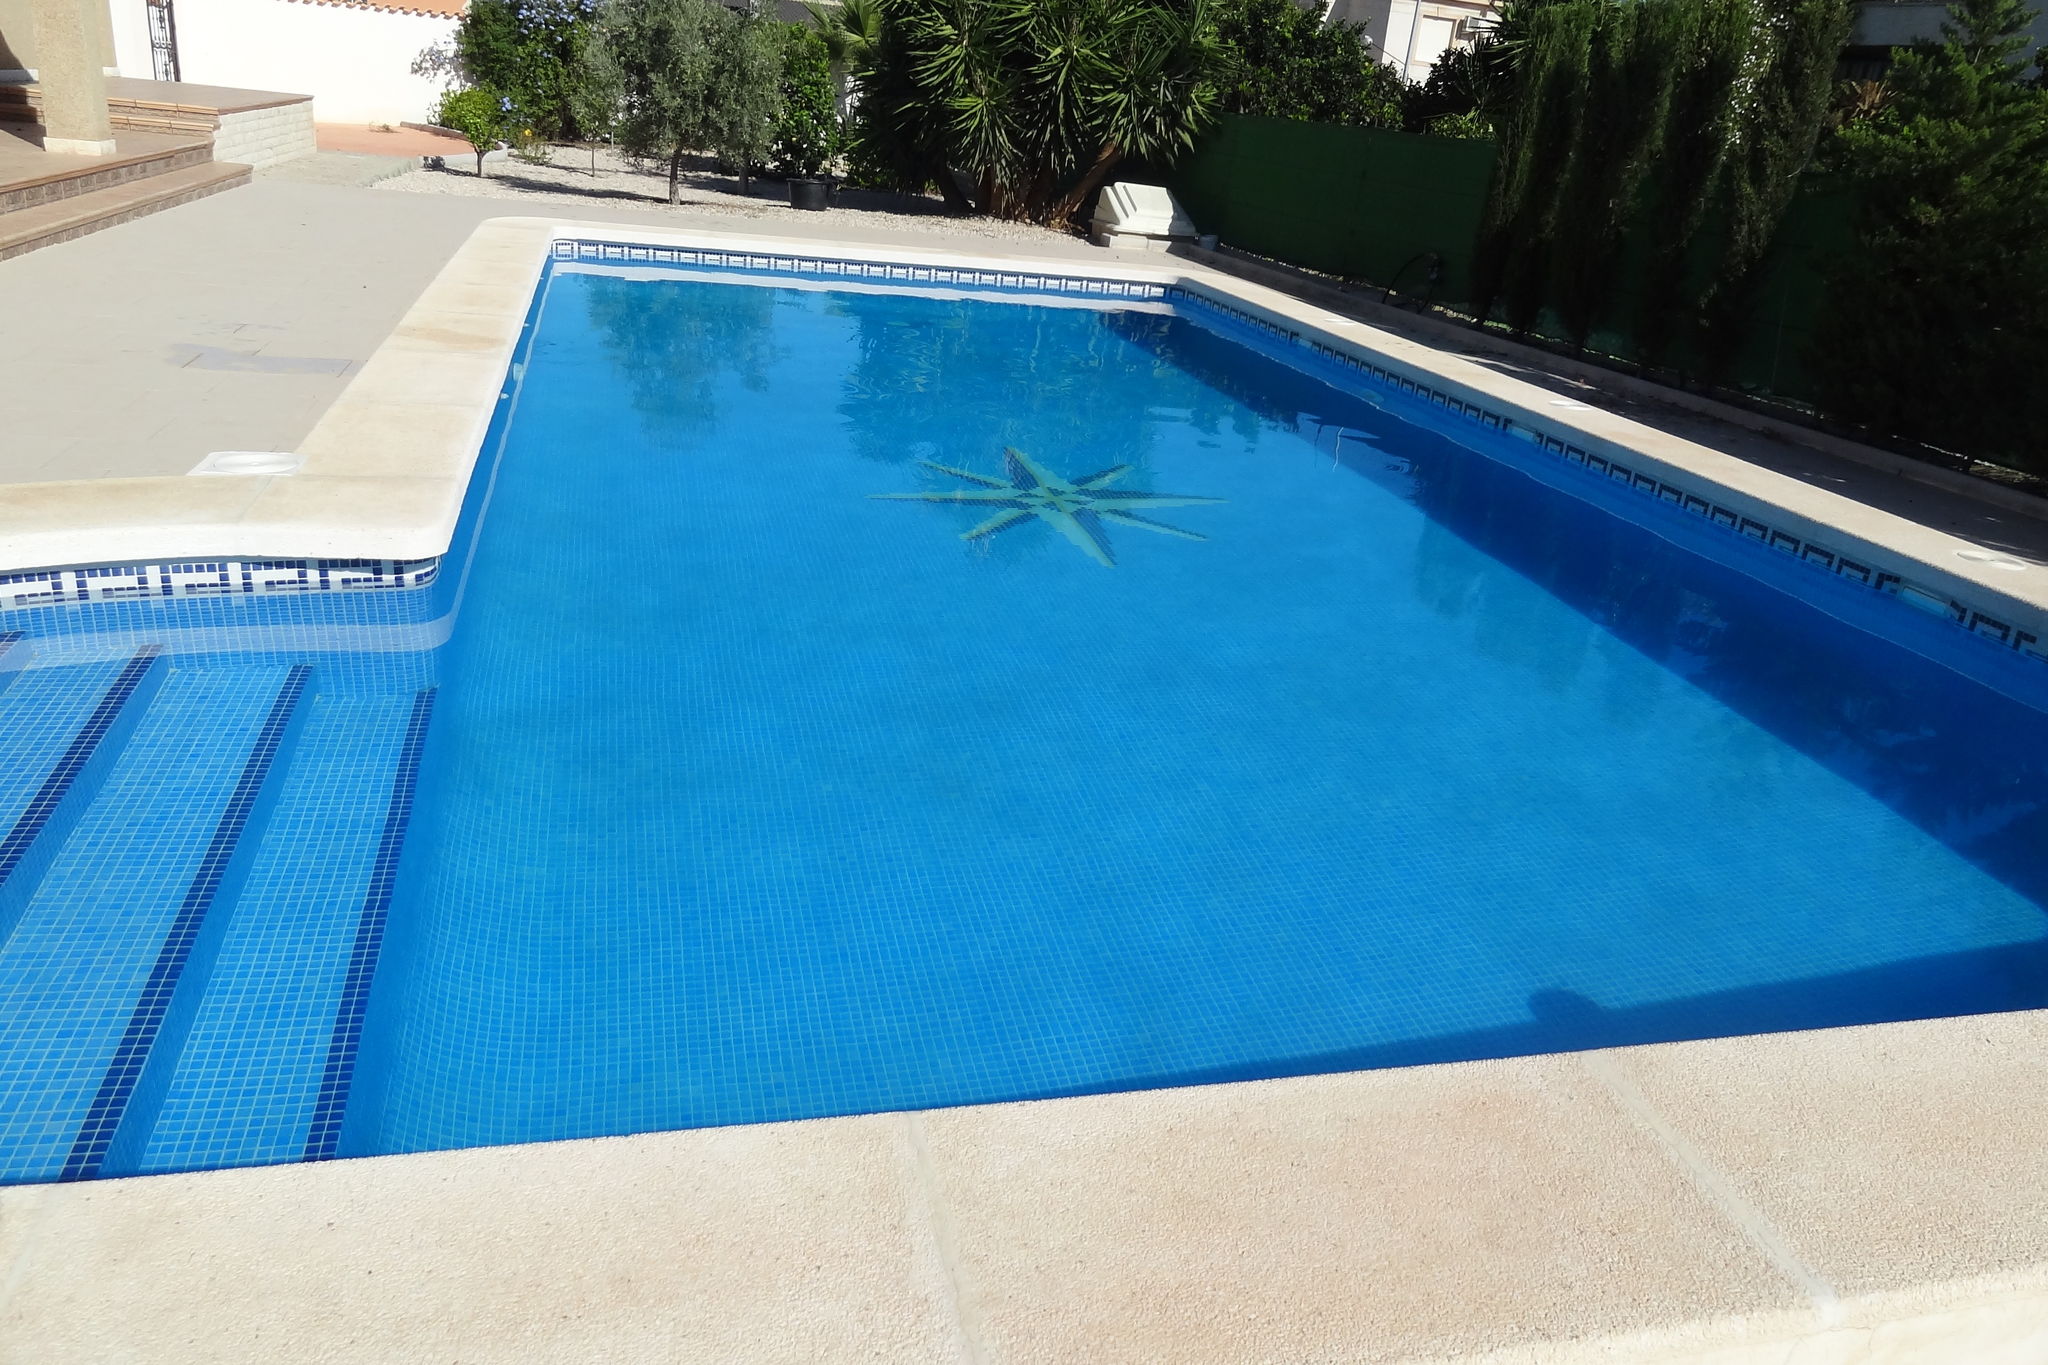 Schitterende villa met groot zwembad (juni-1/2okt), grotere families in San Fulgencio/la Marina.